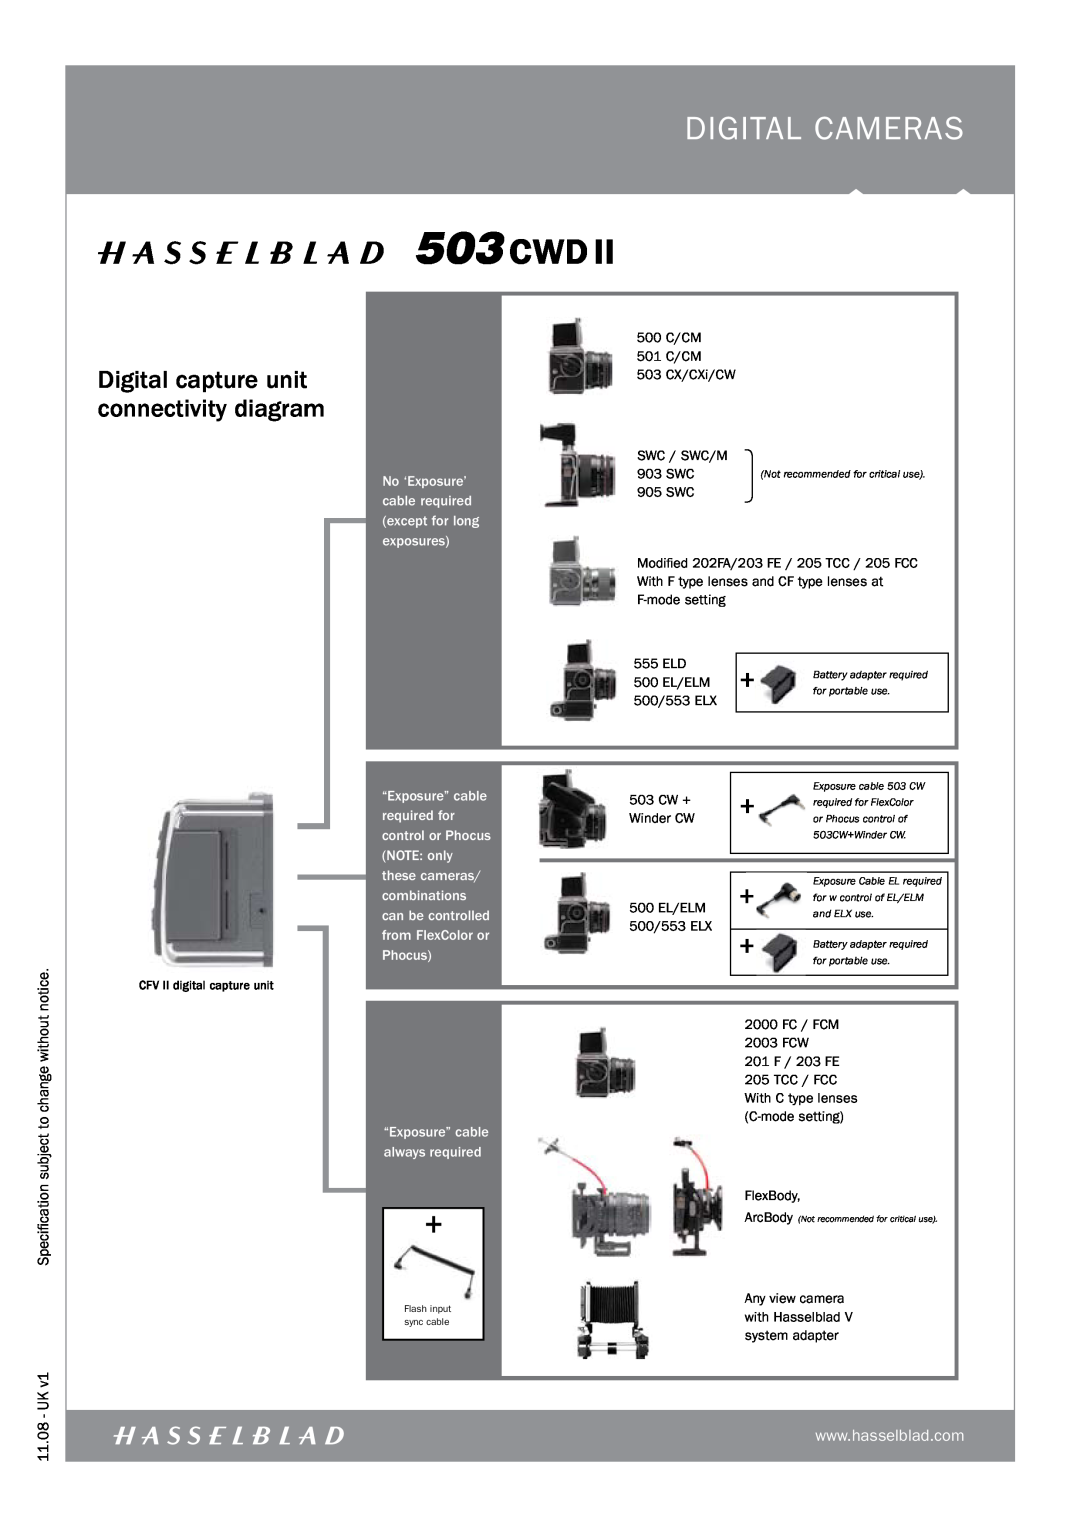 Hasselblad 503CWDII manual digital CAMERAS, Digital capture unit connectivity diagram 